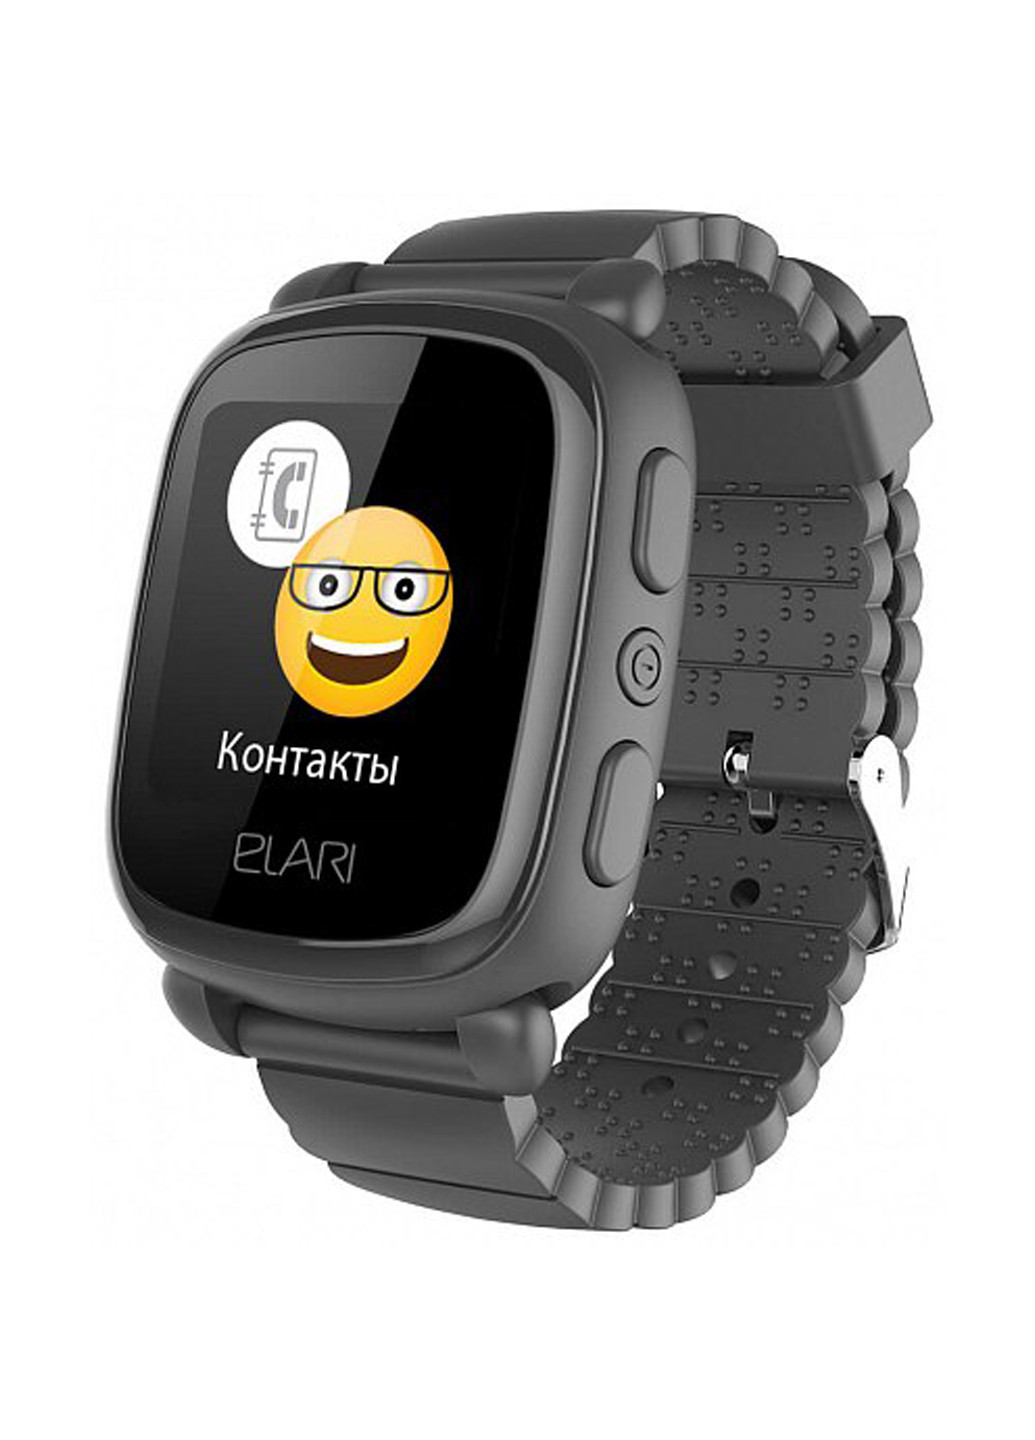 Дитячі смарт-годинник KidPhone 2 Black з GPS-трекером (KP-2B) Elari детские смарт-часы elari kidphone 2 black с gps-трекером (kp-2b) (132853824)